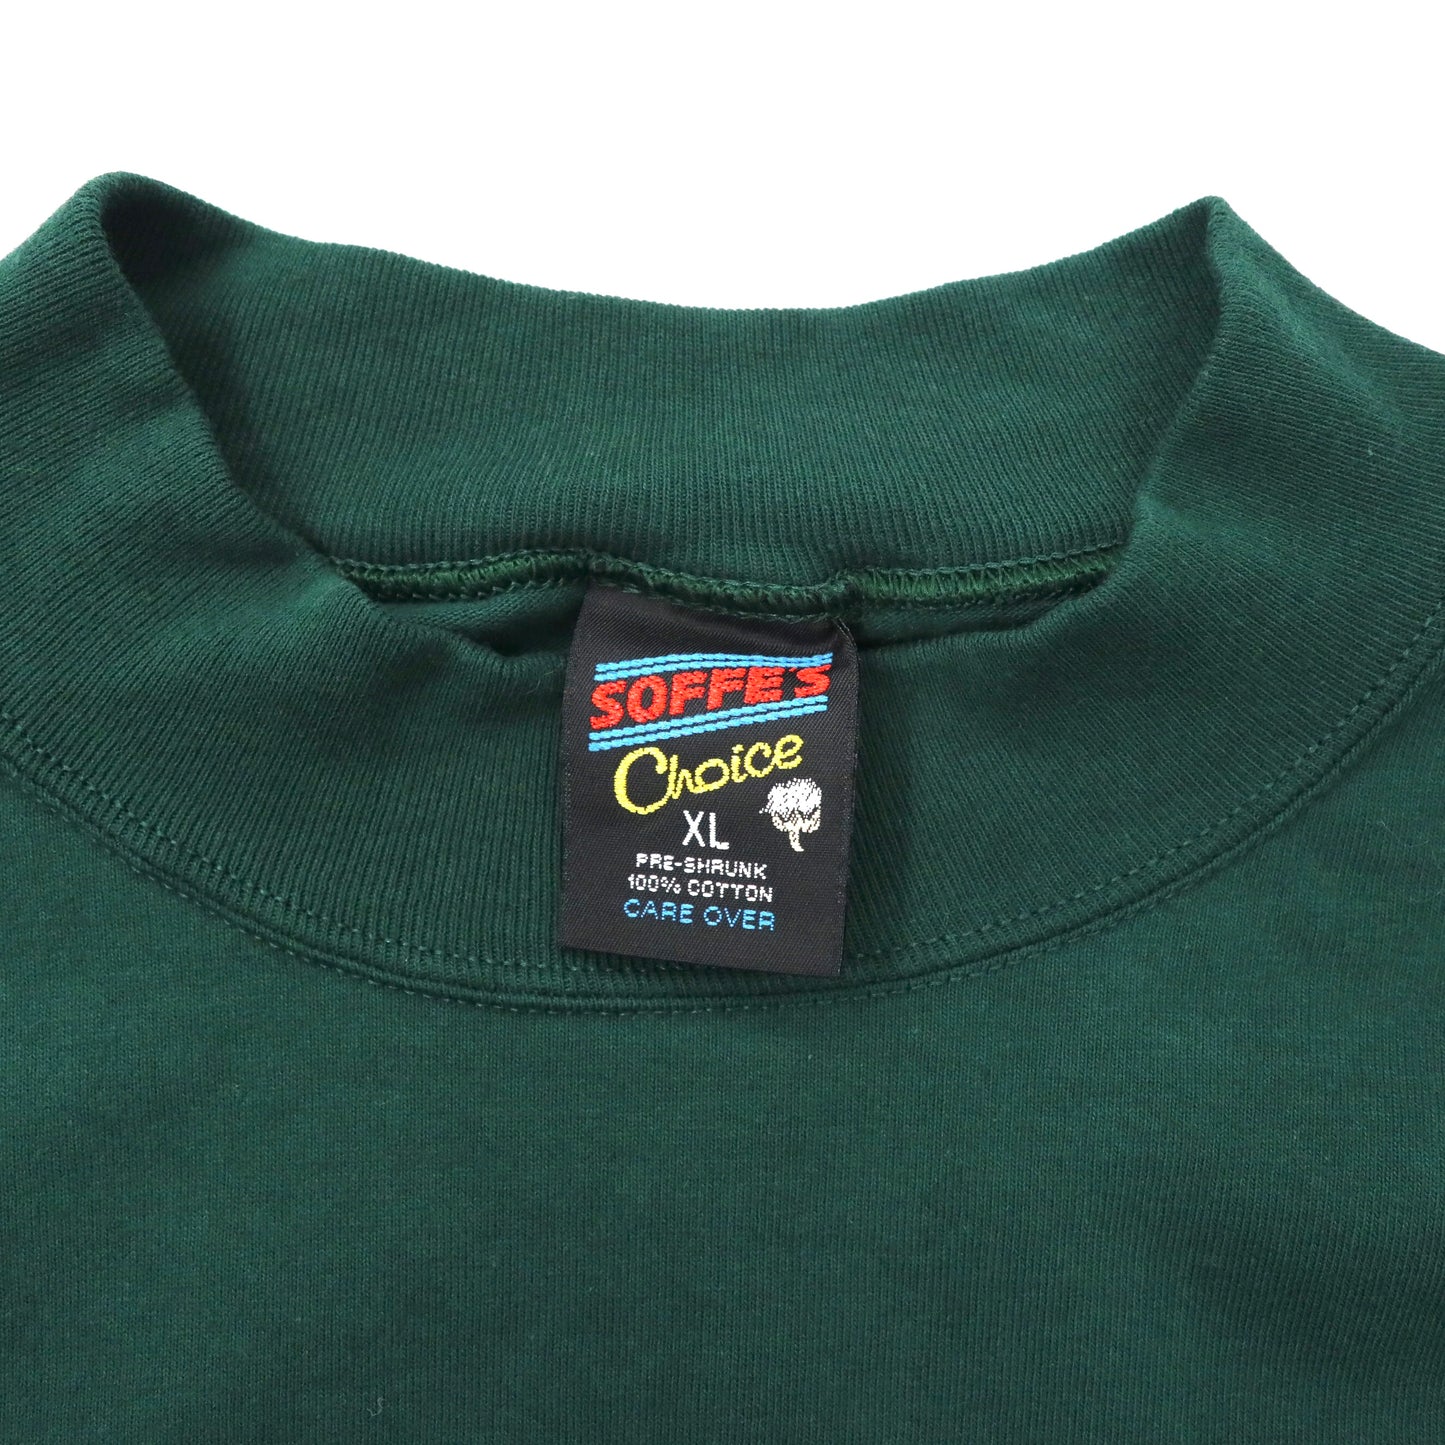 USA製 SOFEE'S Choice ビッグサイズ ハイネックTシャツ XL グリーン コットン US企業刺繍